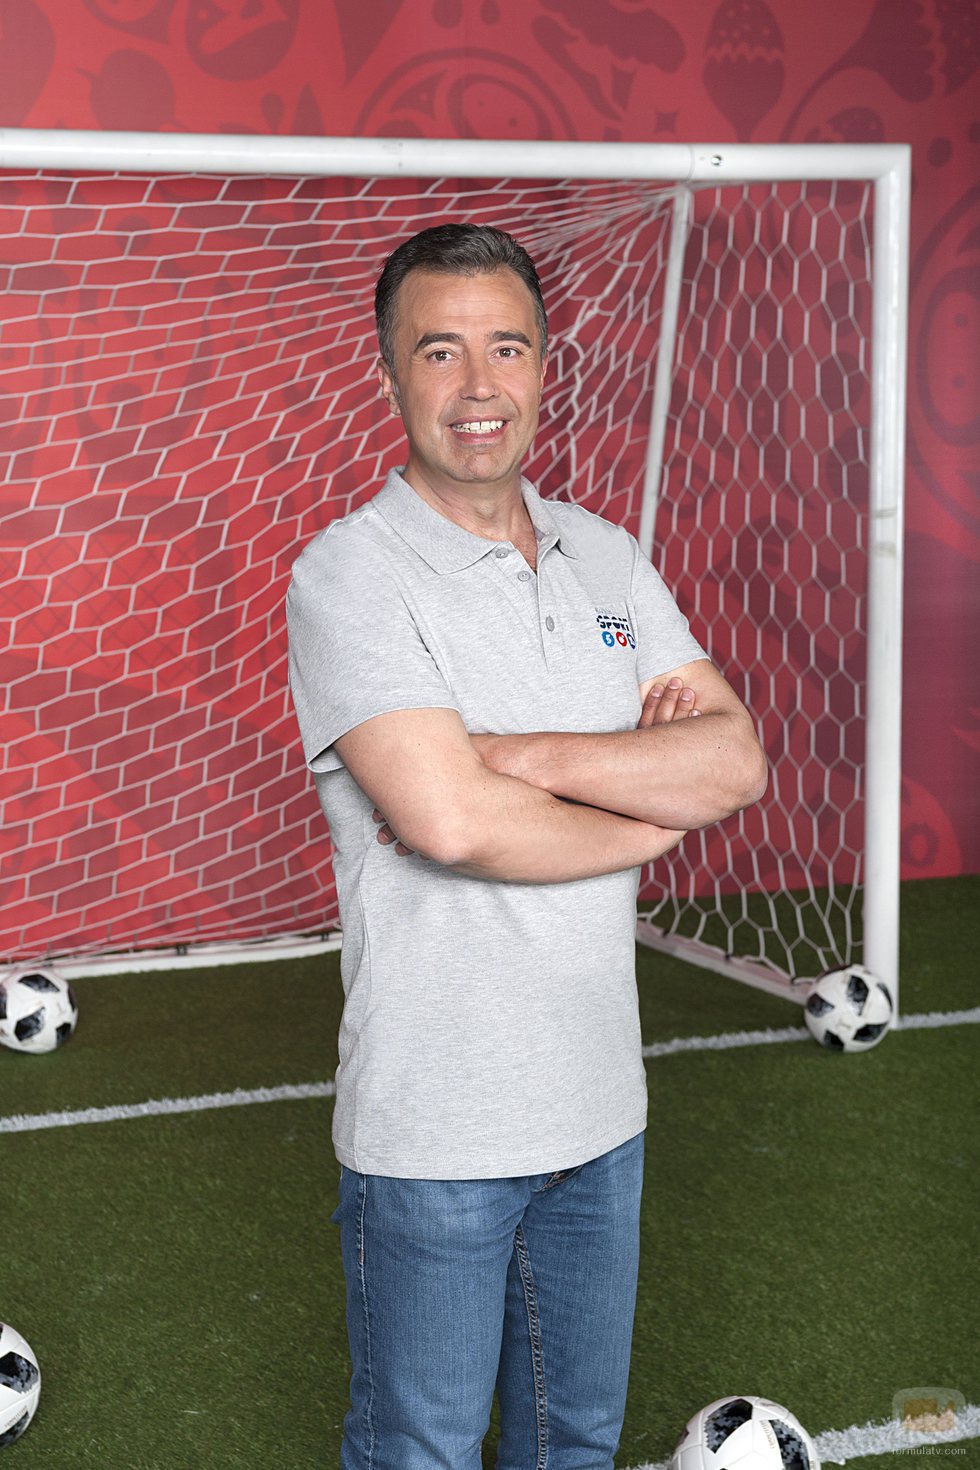 Jose Antonio Luque, narrador de los partidos del Mundial de Fútbol 2018